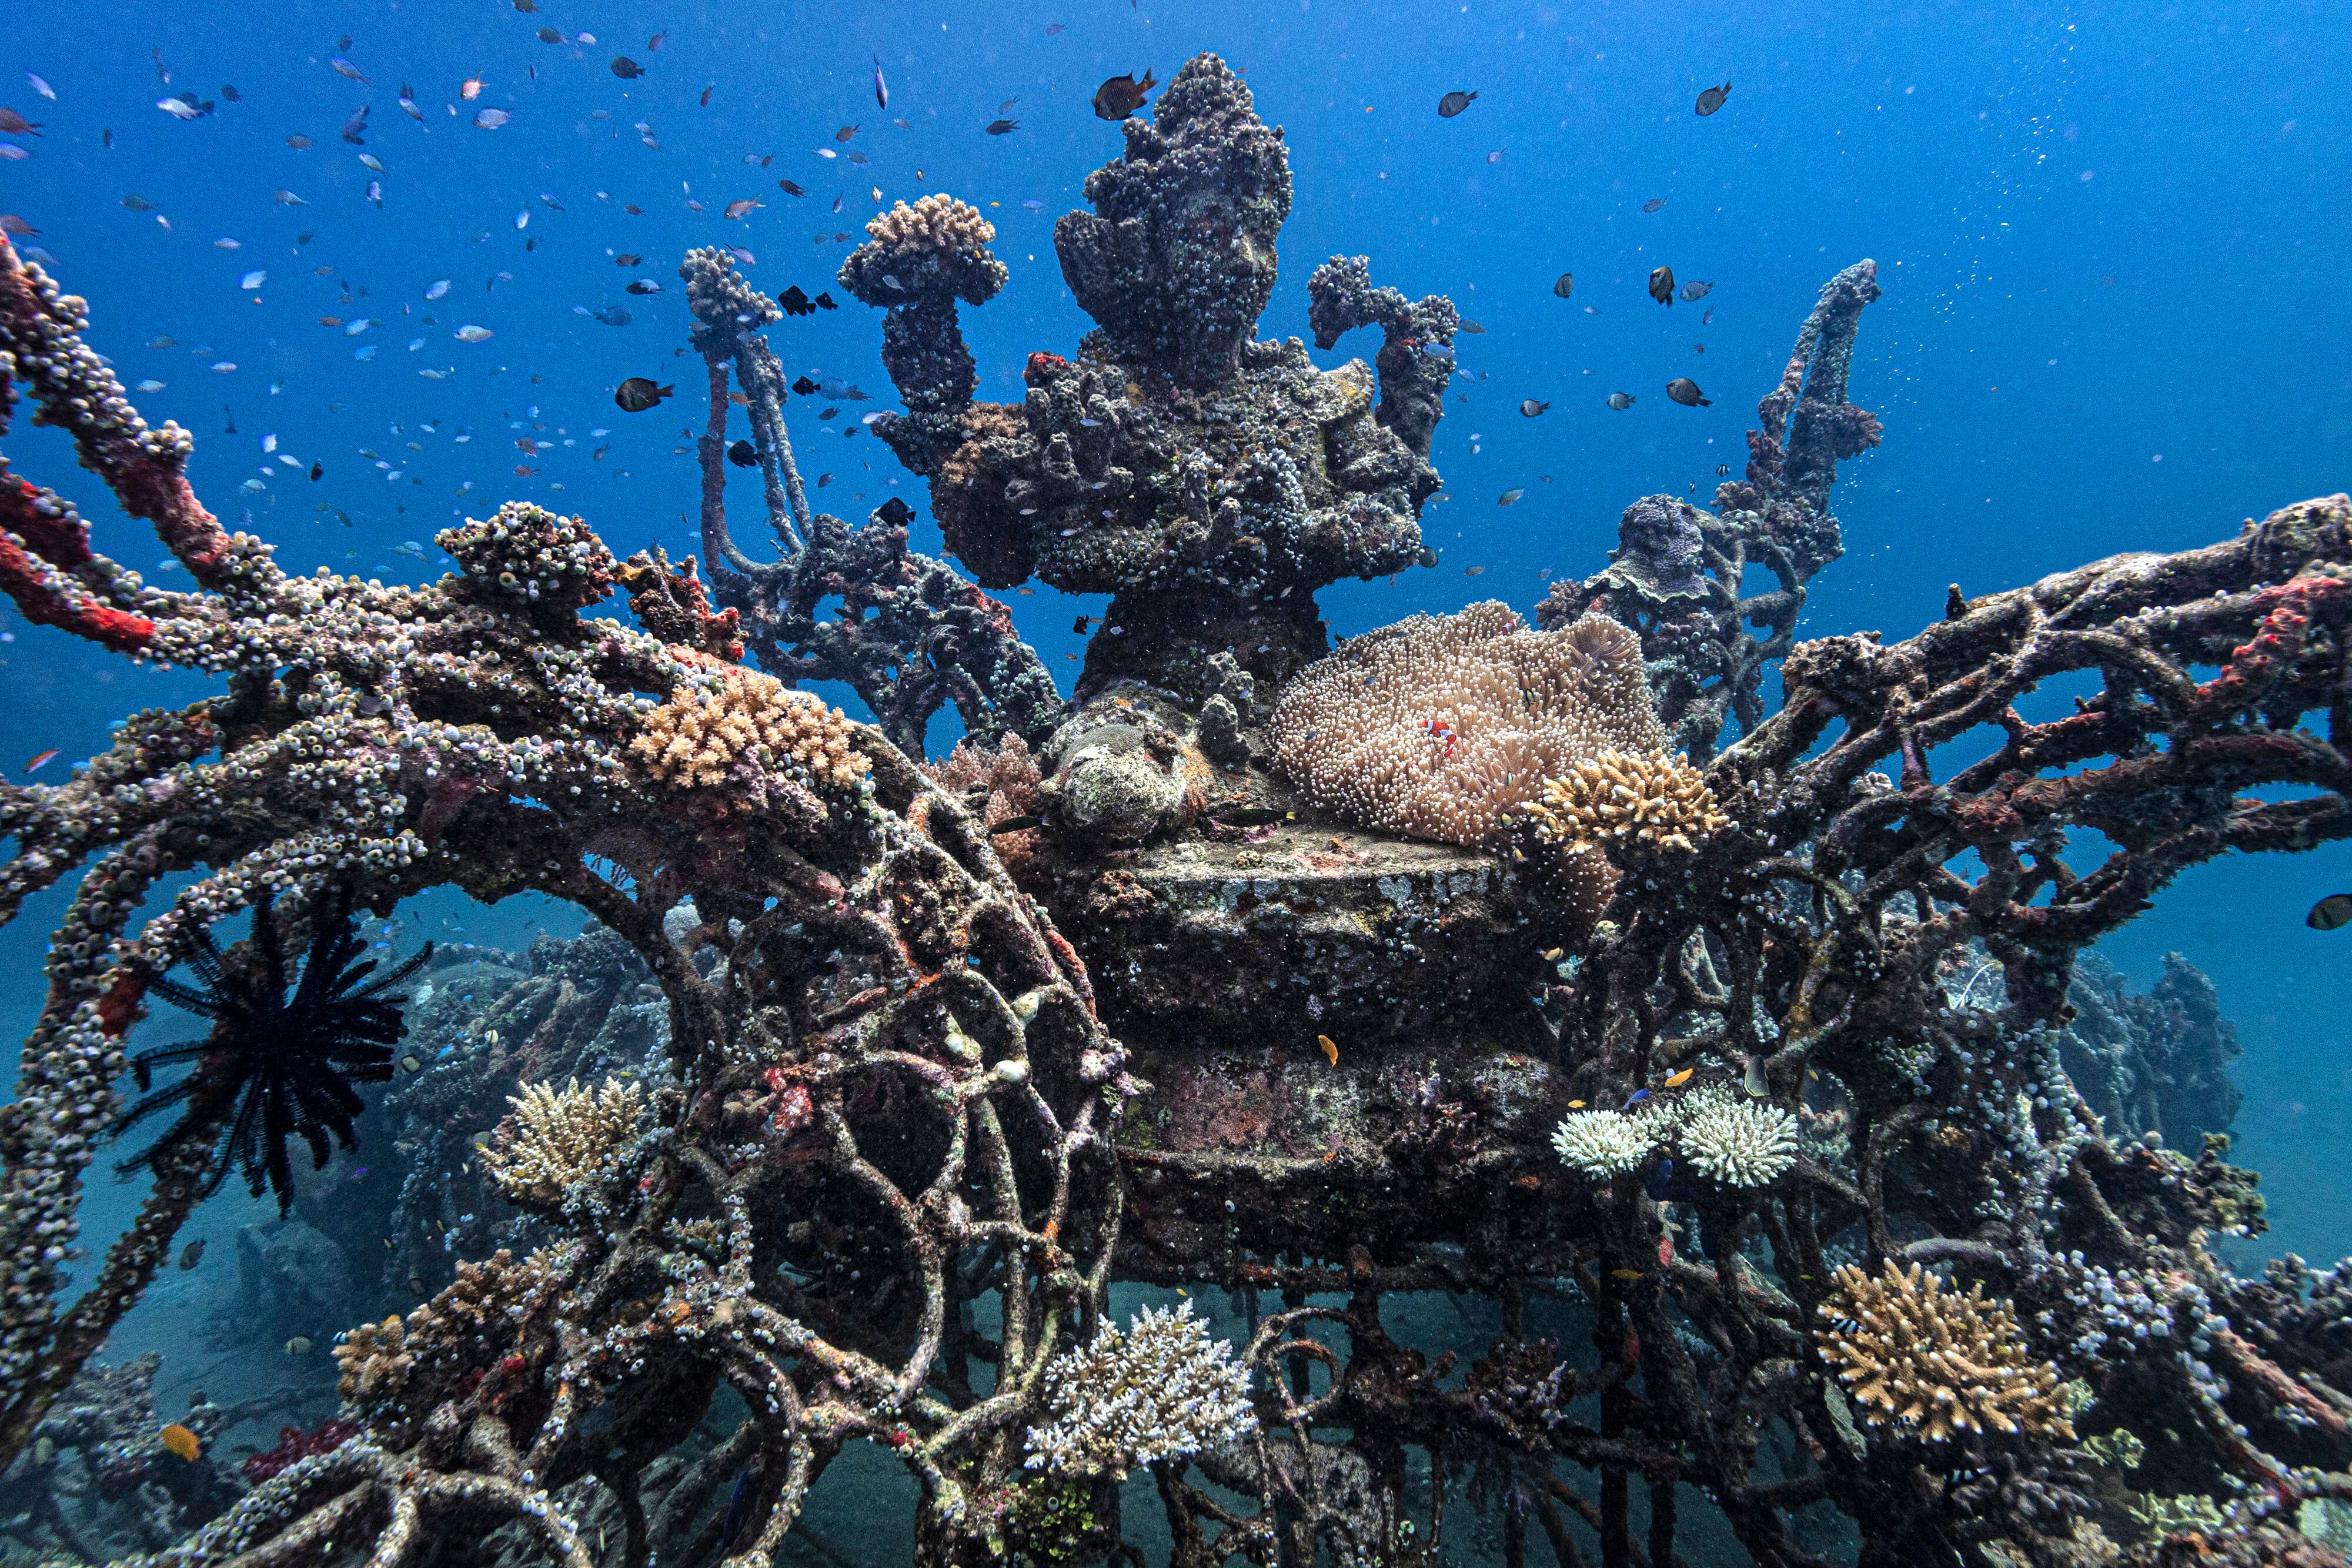 Viveros de Coral. Los arrecifes de coral de Pemuteran, al noroeste de Bali, se han deteriorado debido a métodos agresivos de pesca empleados en la zona. Para restaurar el hábitat se han construido viveros de coral utilizando una tecnología llamada acreción mineral electrolítica (Biorock). 